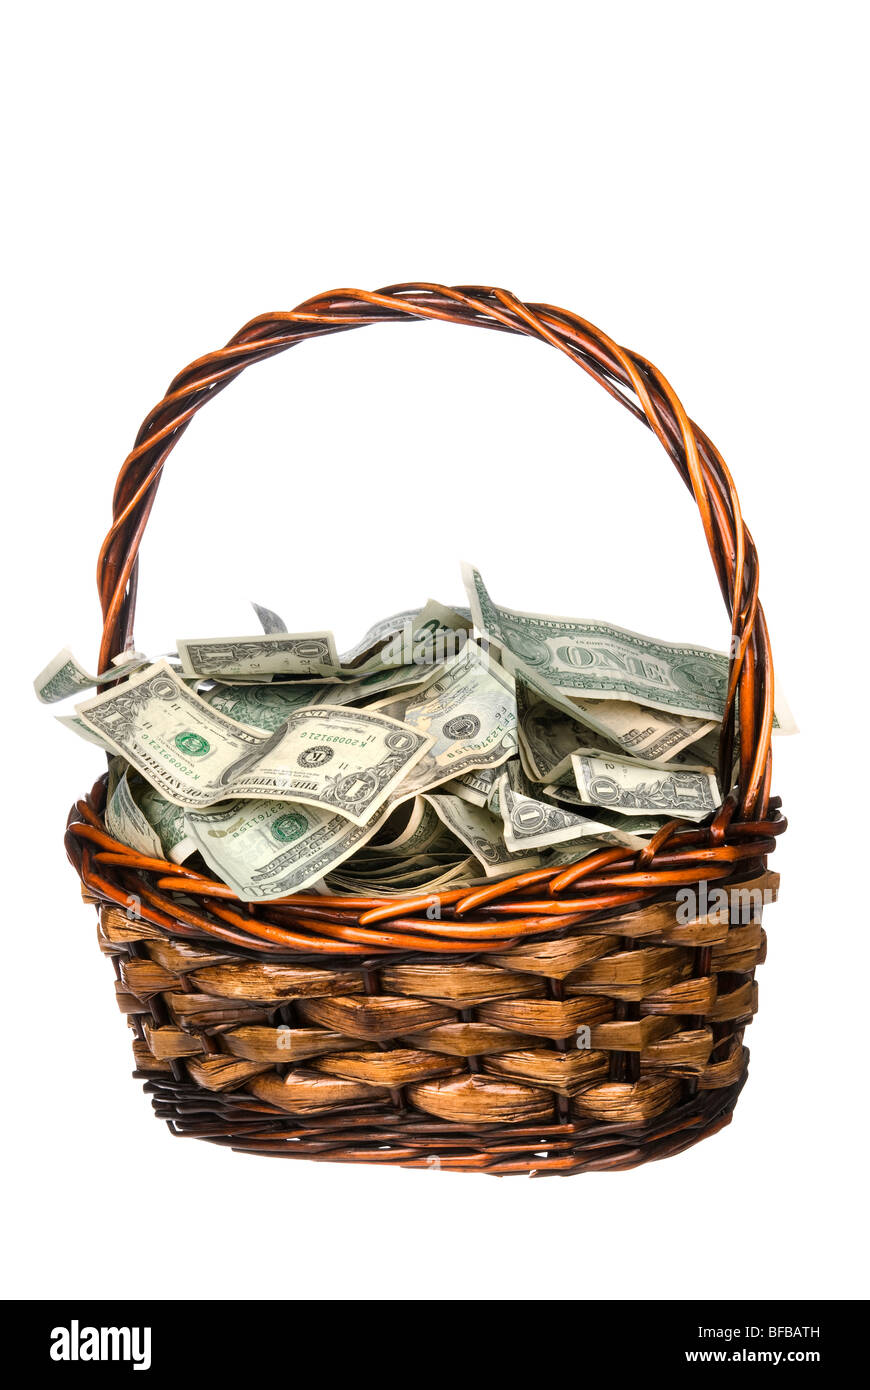 Ein Weidenkorb mit Griff hält einen Haufen Geld. Gut für die meisten  finanziellen Rückschlüsse Stockfotografie - Alamy